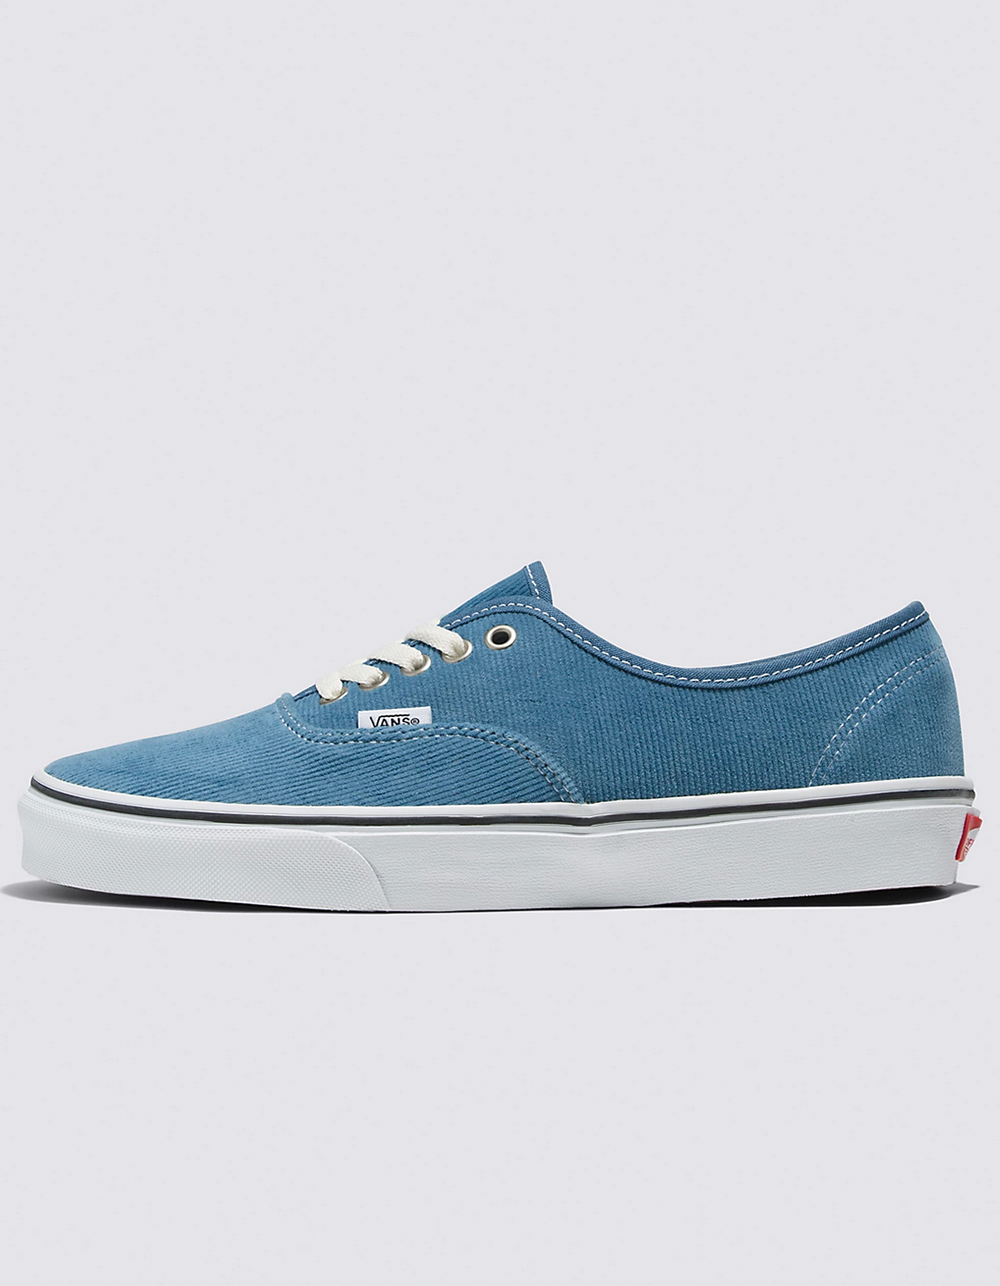 VANS Authentic Corduroy Shoes - LT BLUE/WHITE | Tillys